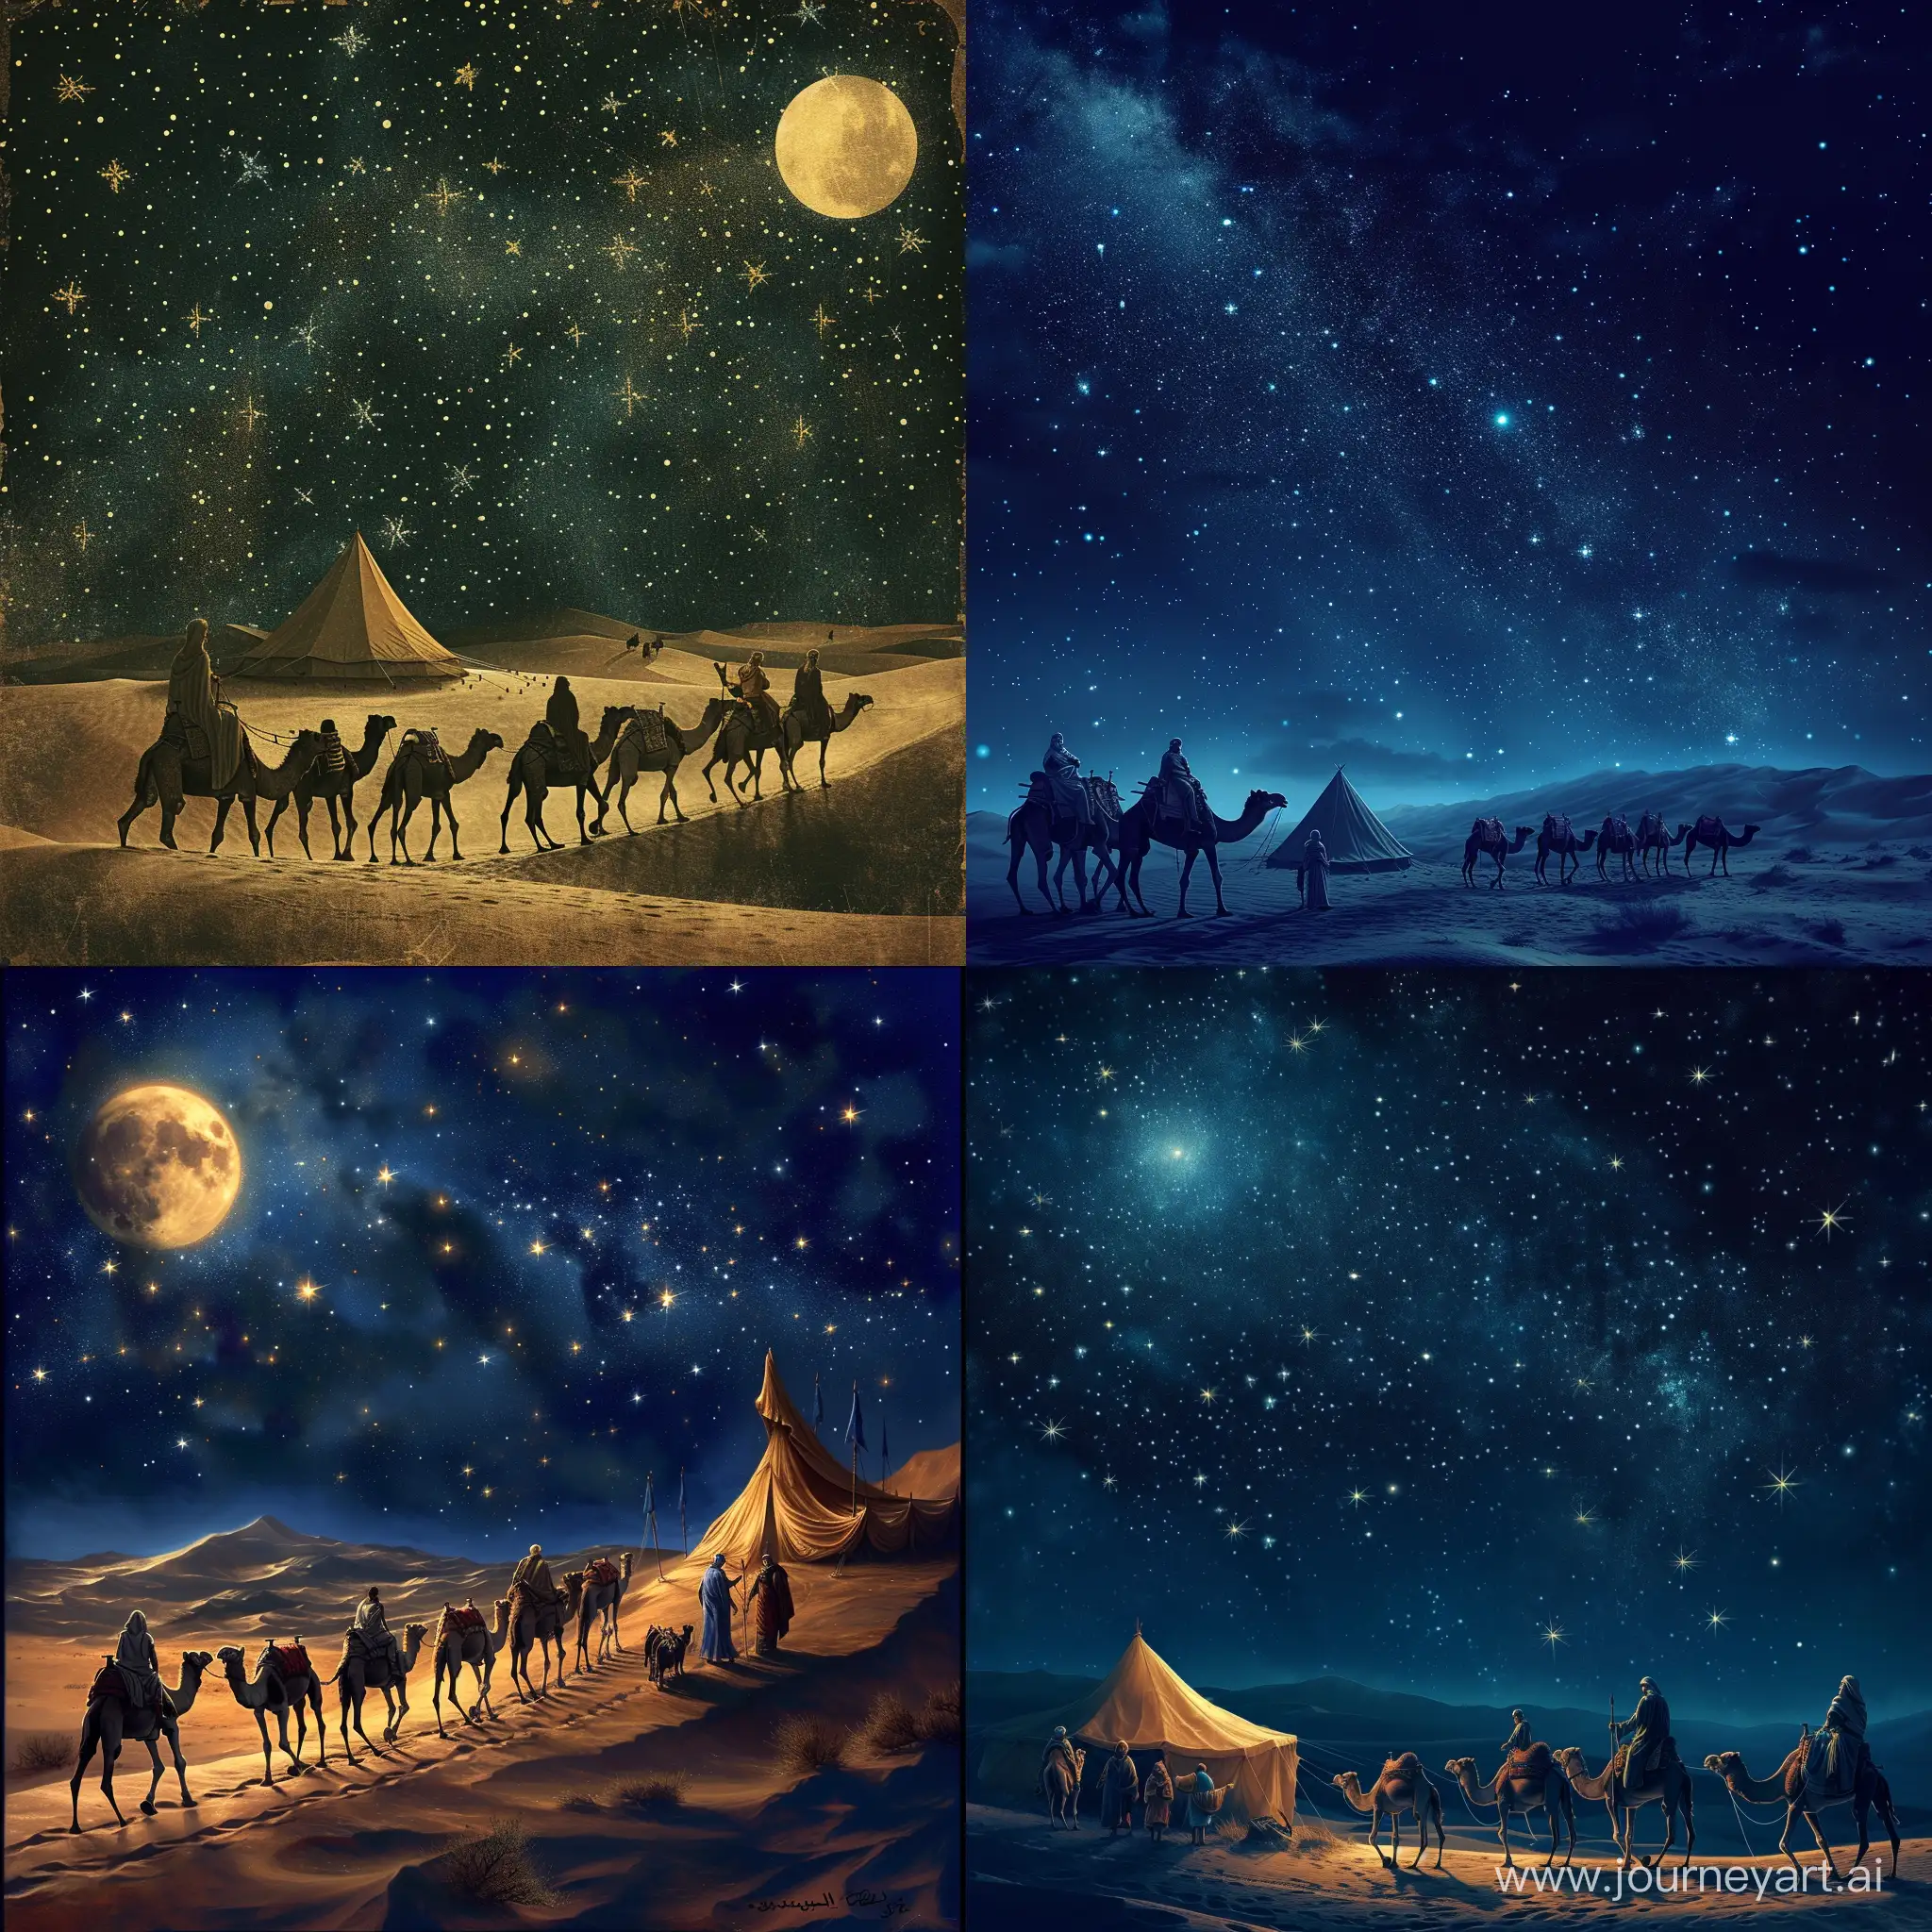 Караван верблюдов идёт в пустыни,ночное небо в звёздах,светит луна 🌙,в далеке стоит шатёр, рядом с шатром стоит мудрец с послом